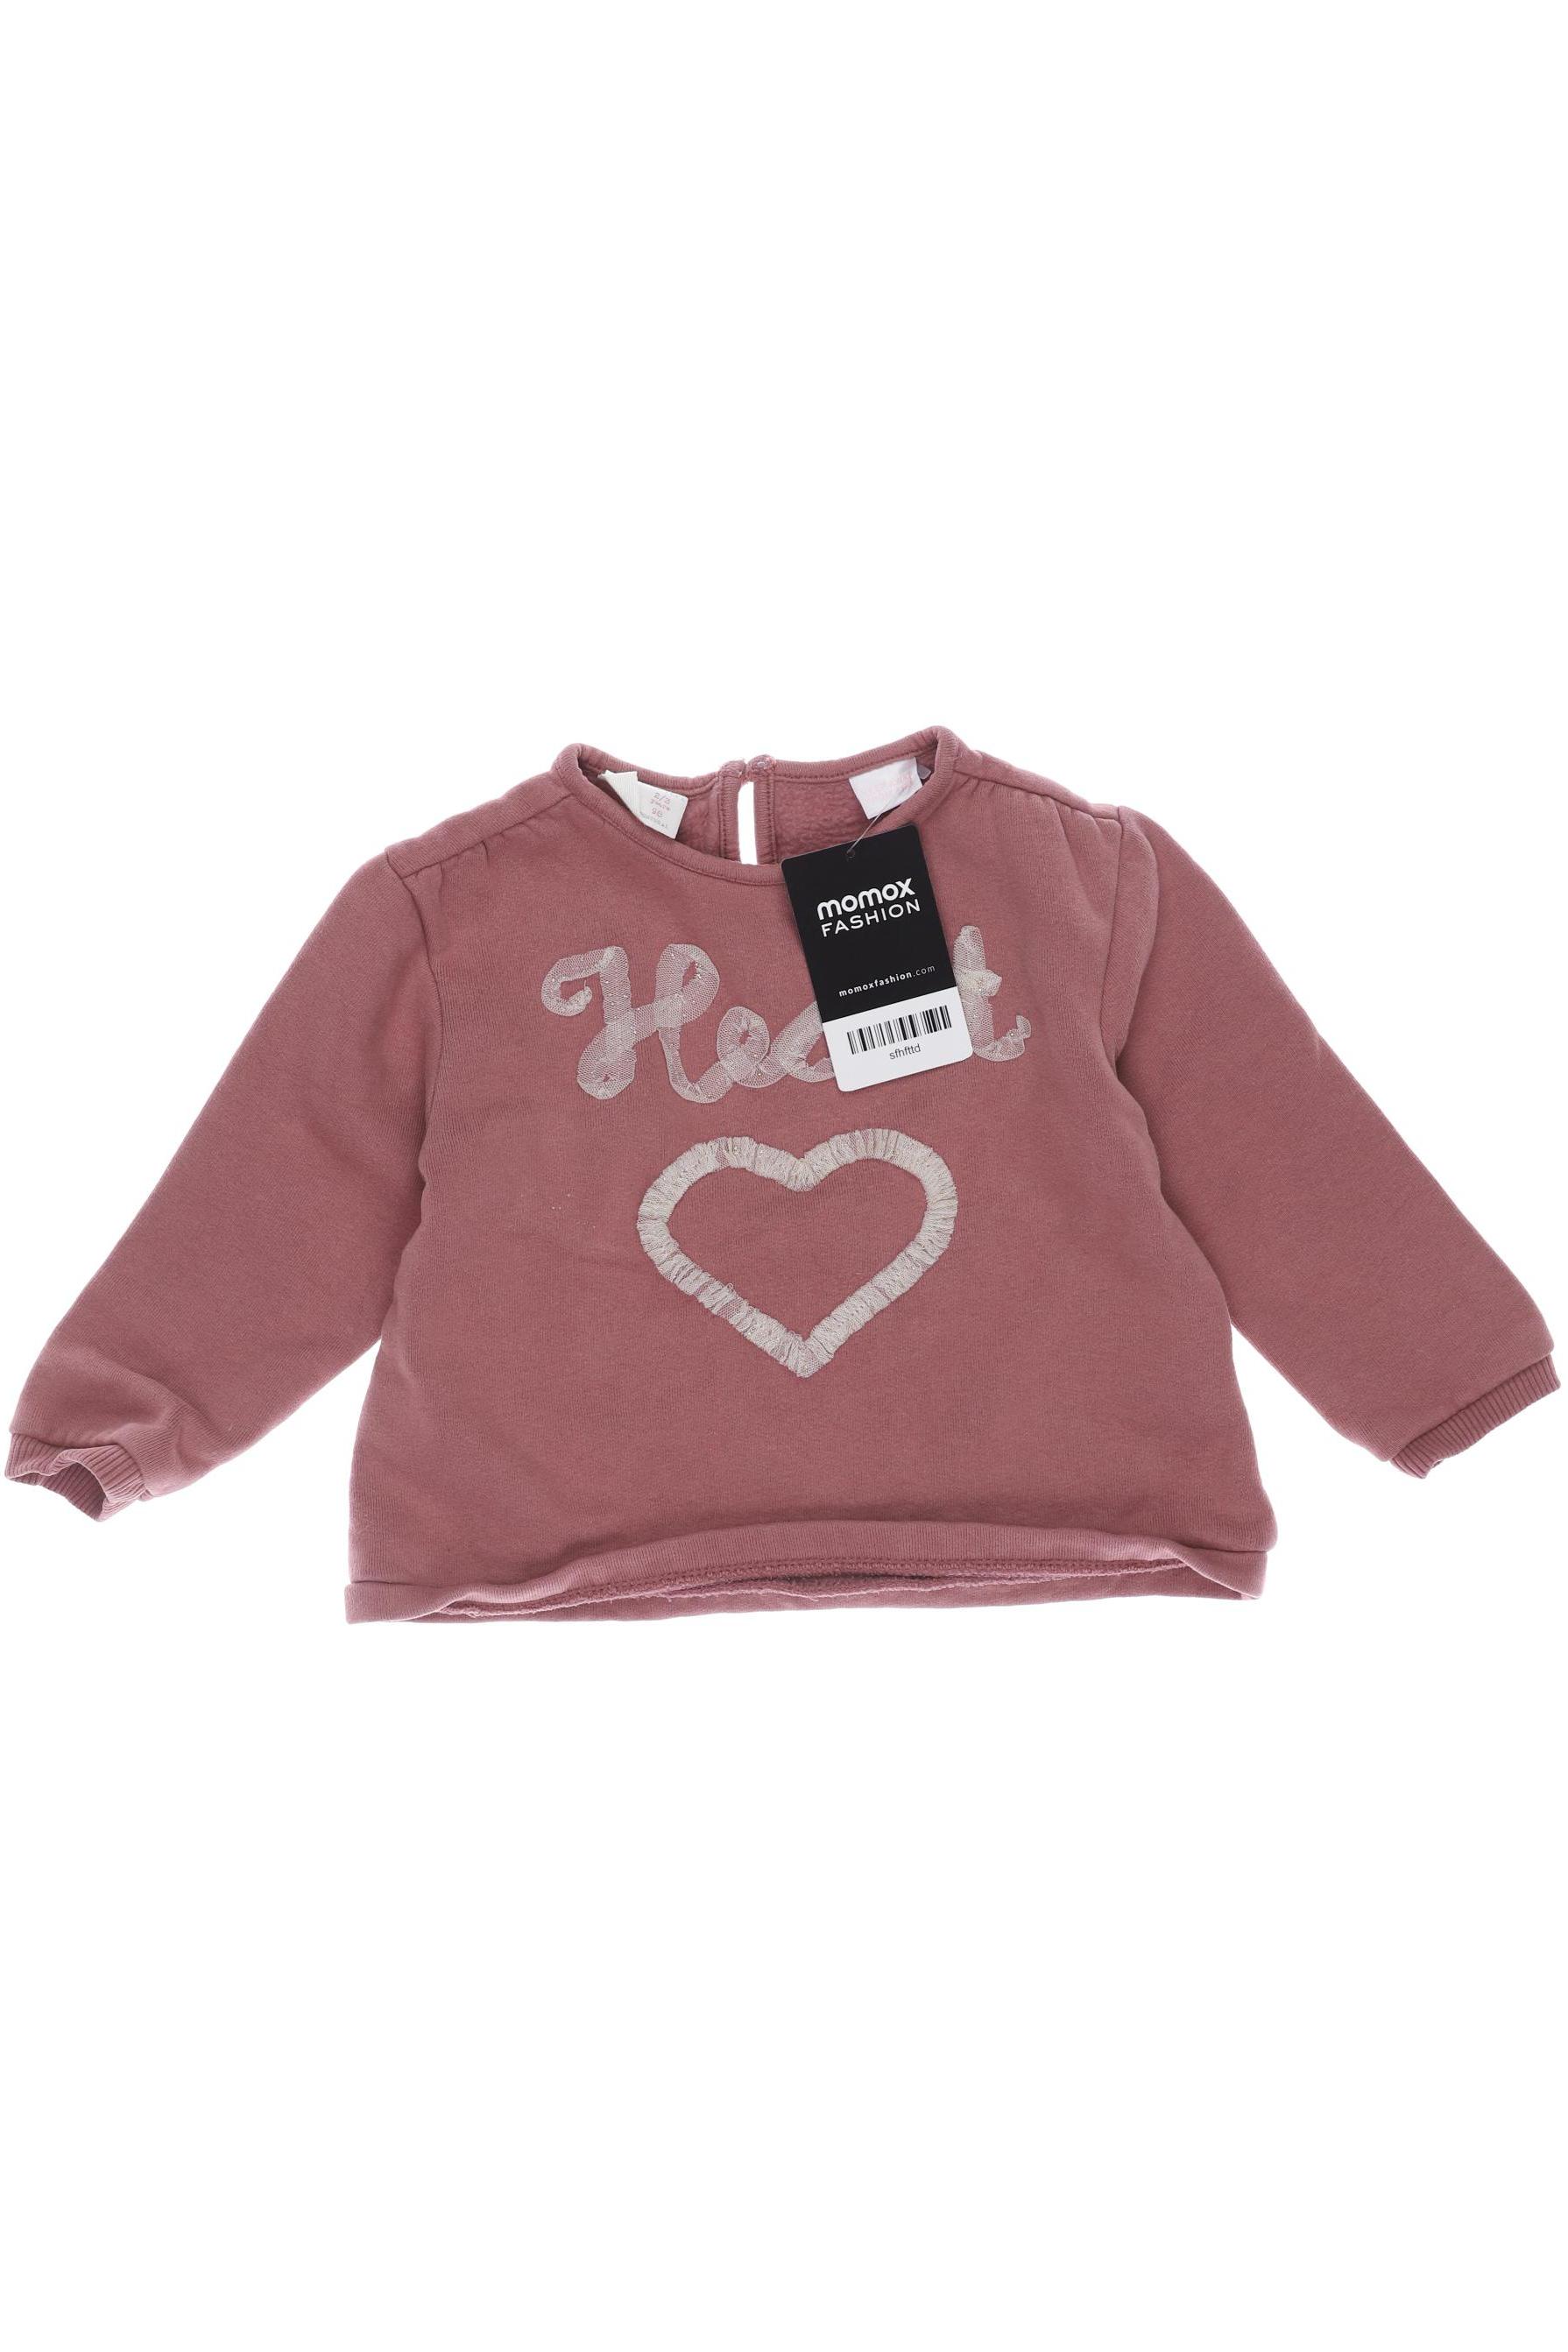 Zara Damen Hoodies & Sweater, pink, Gr. 98 von ZARA